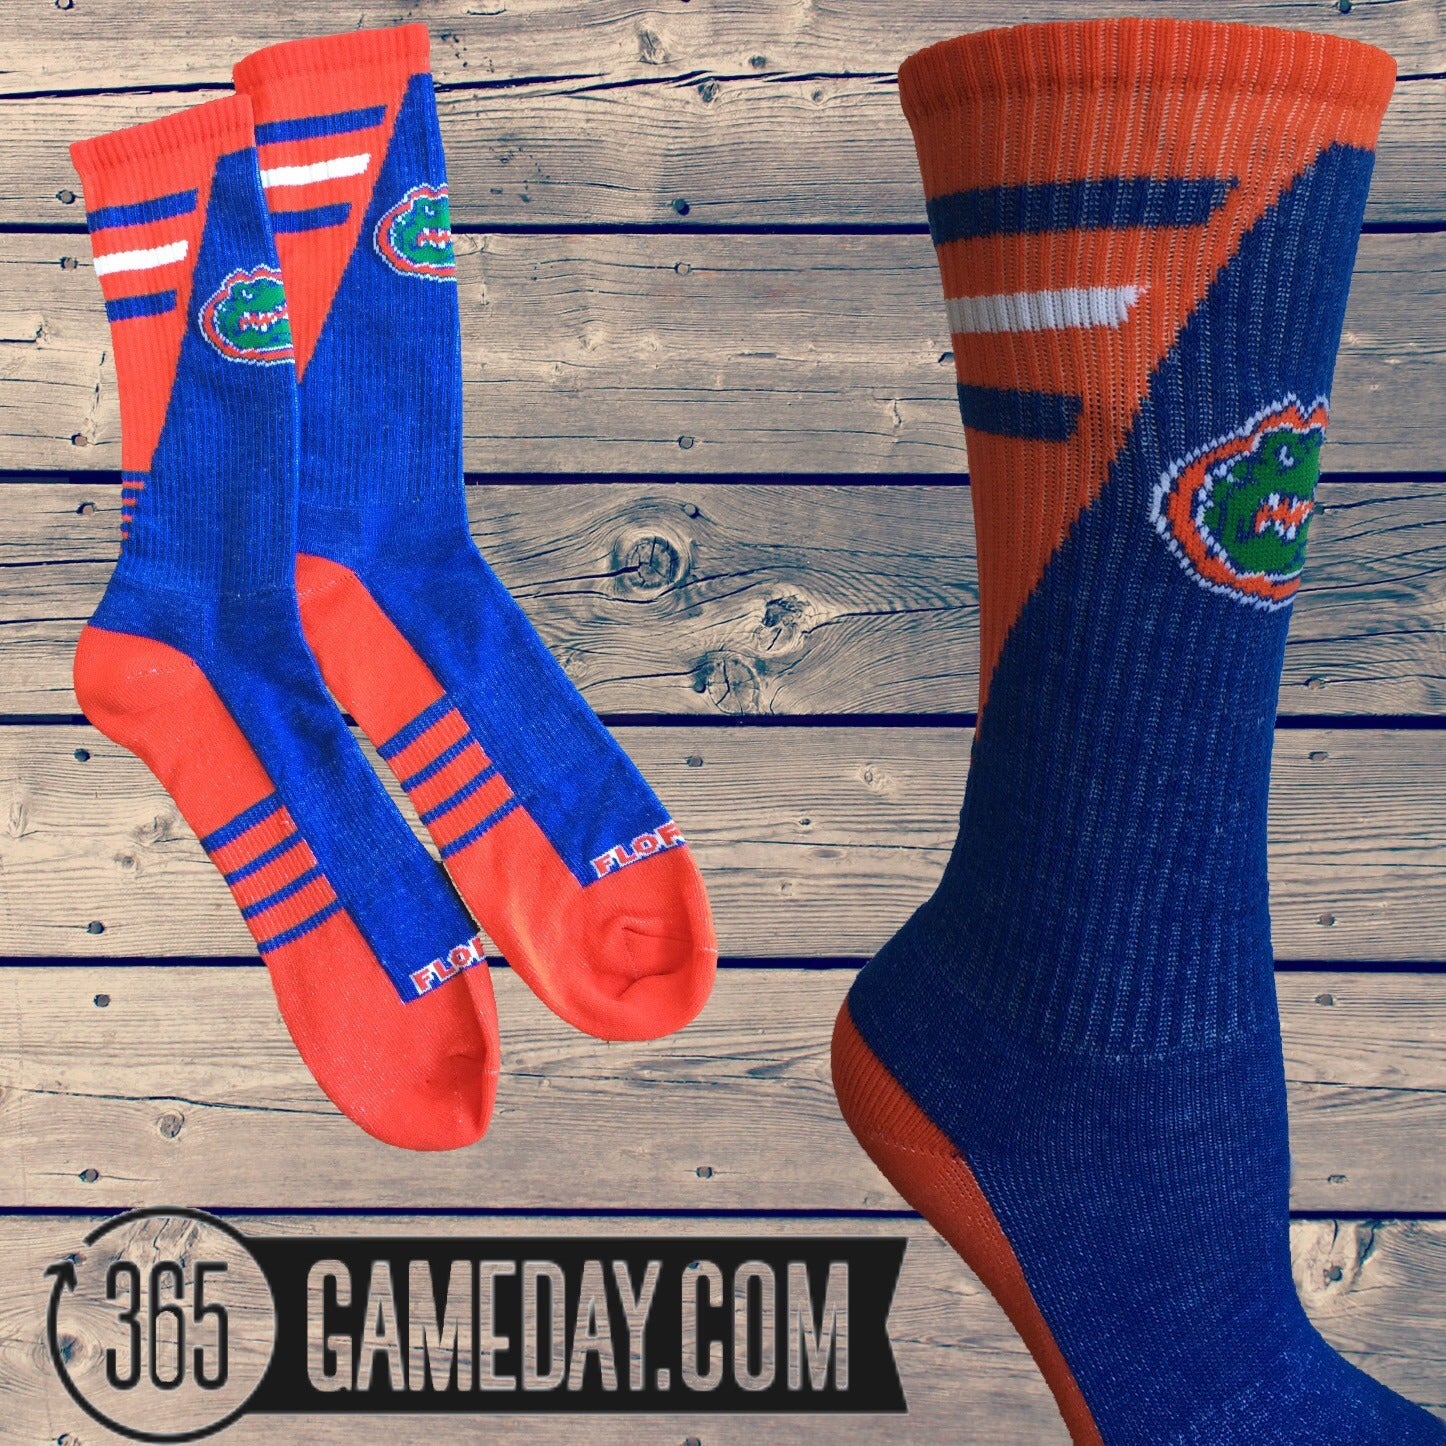 Florida Gators "Gameday Elite" Sock